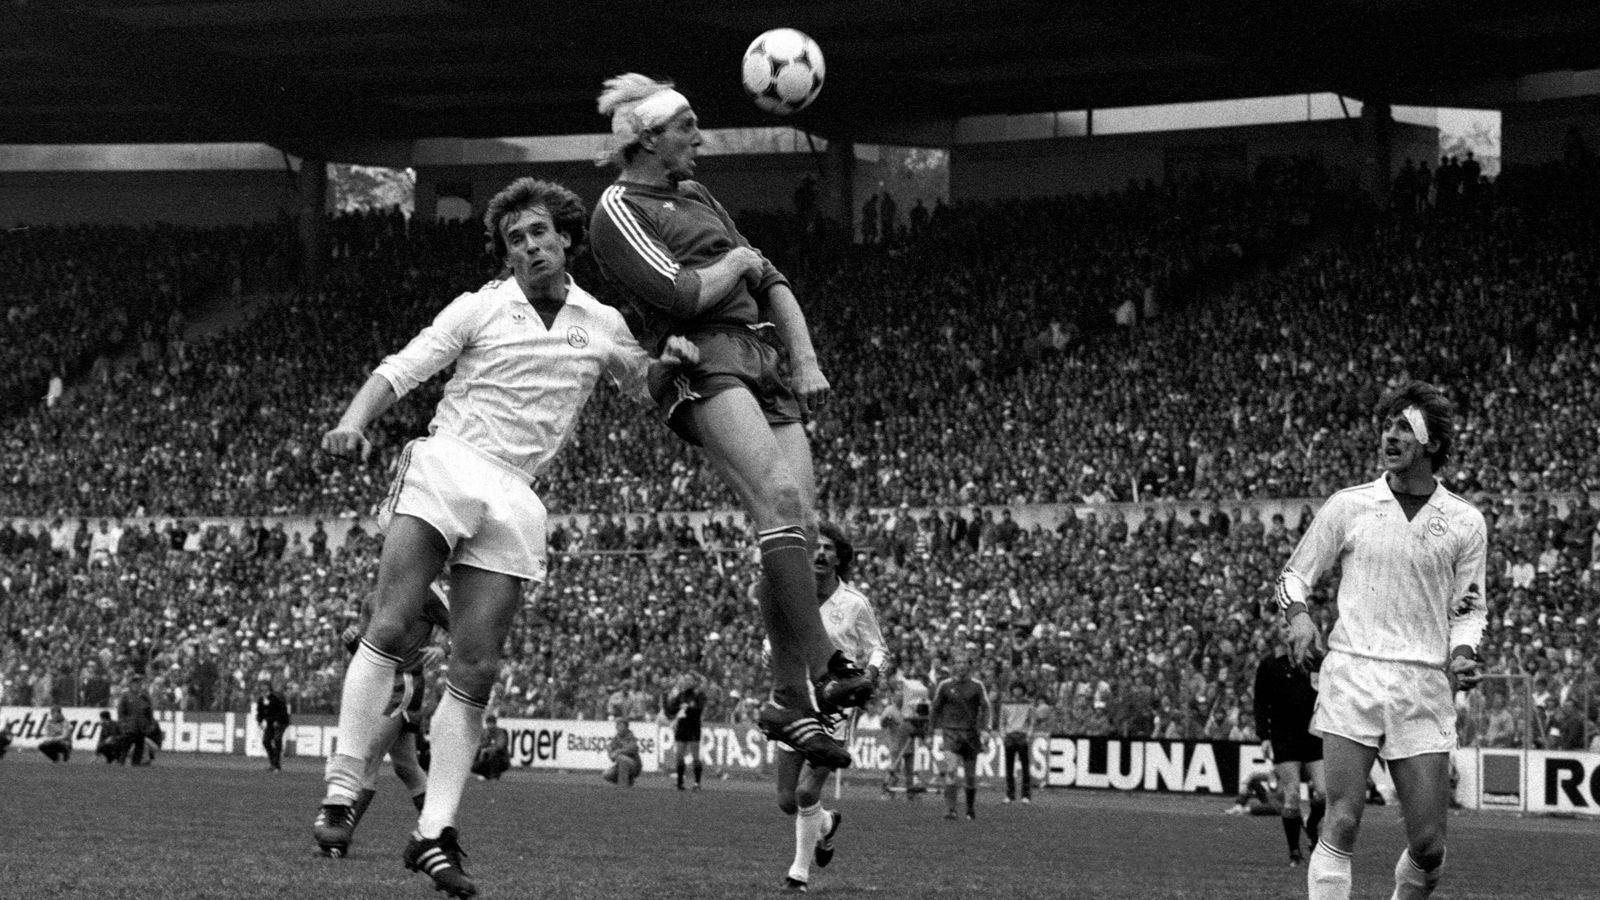 
                <strong>Dieter Hoeneß</strong><br>
                Dieter Hoeneß hatte 1982 im Pokal-Finale mit Bayern München gegen den 1. FC Nürnberg als "Turban Dieter" seinen großen Auftritt, als er trotz Platzwunde weiterspielte und den 4:2-Endstand markierte - natürlich per Kopf. Nach fünf Meisterschaften und drei Pokalsiegen beendete der bullige Stürmer 1987 seine Karriere.
              